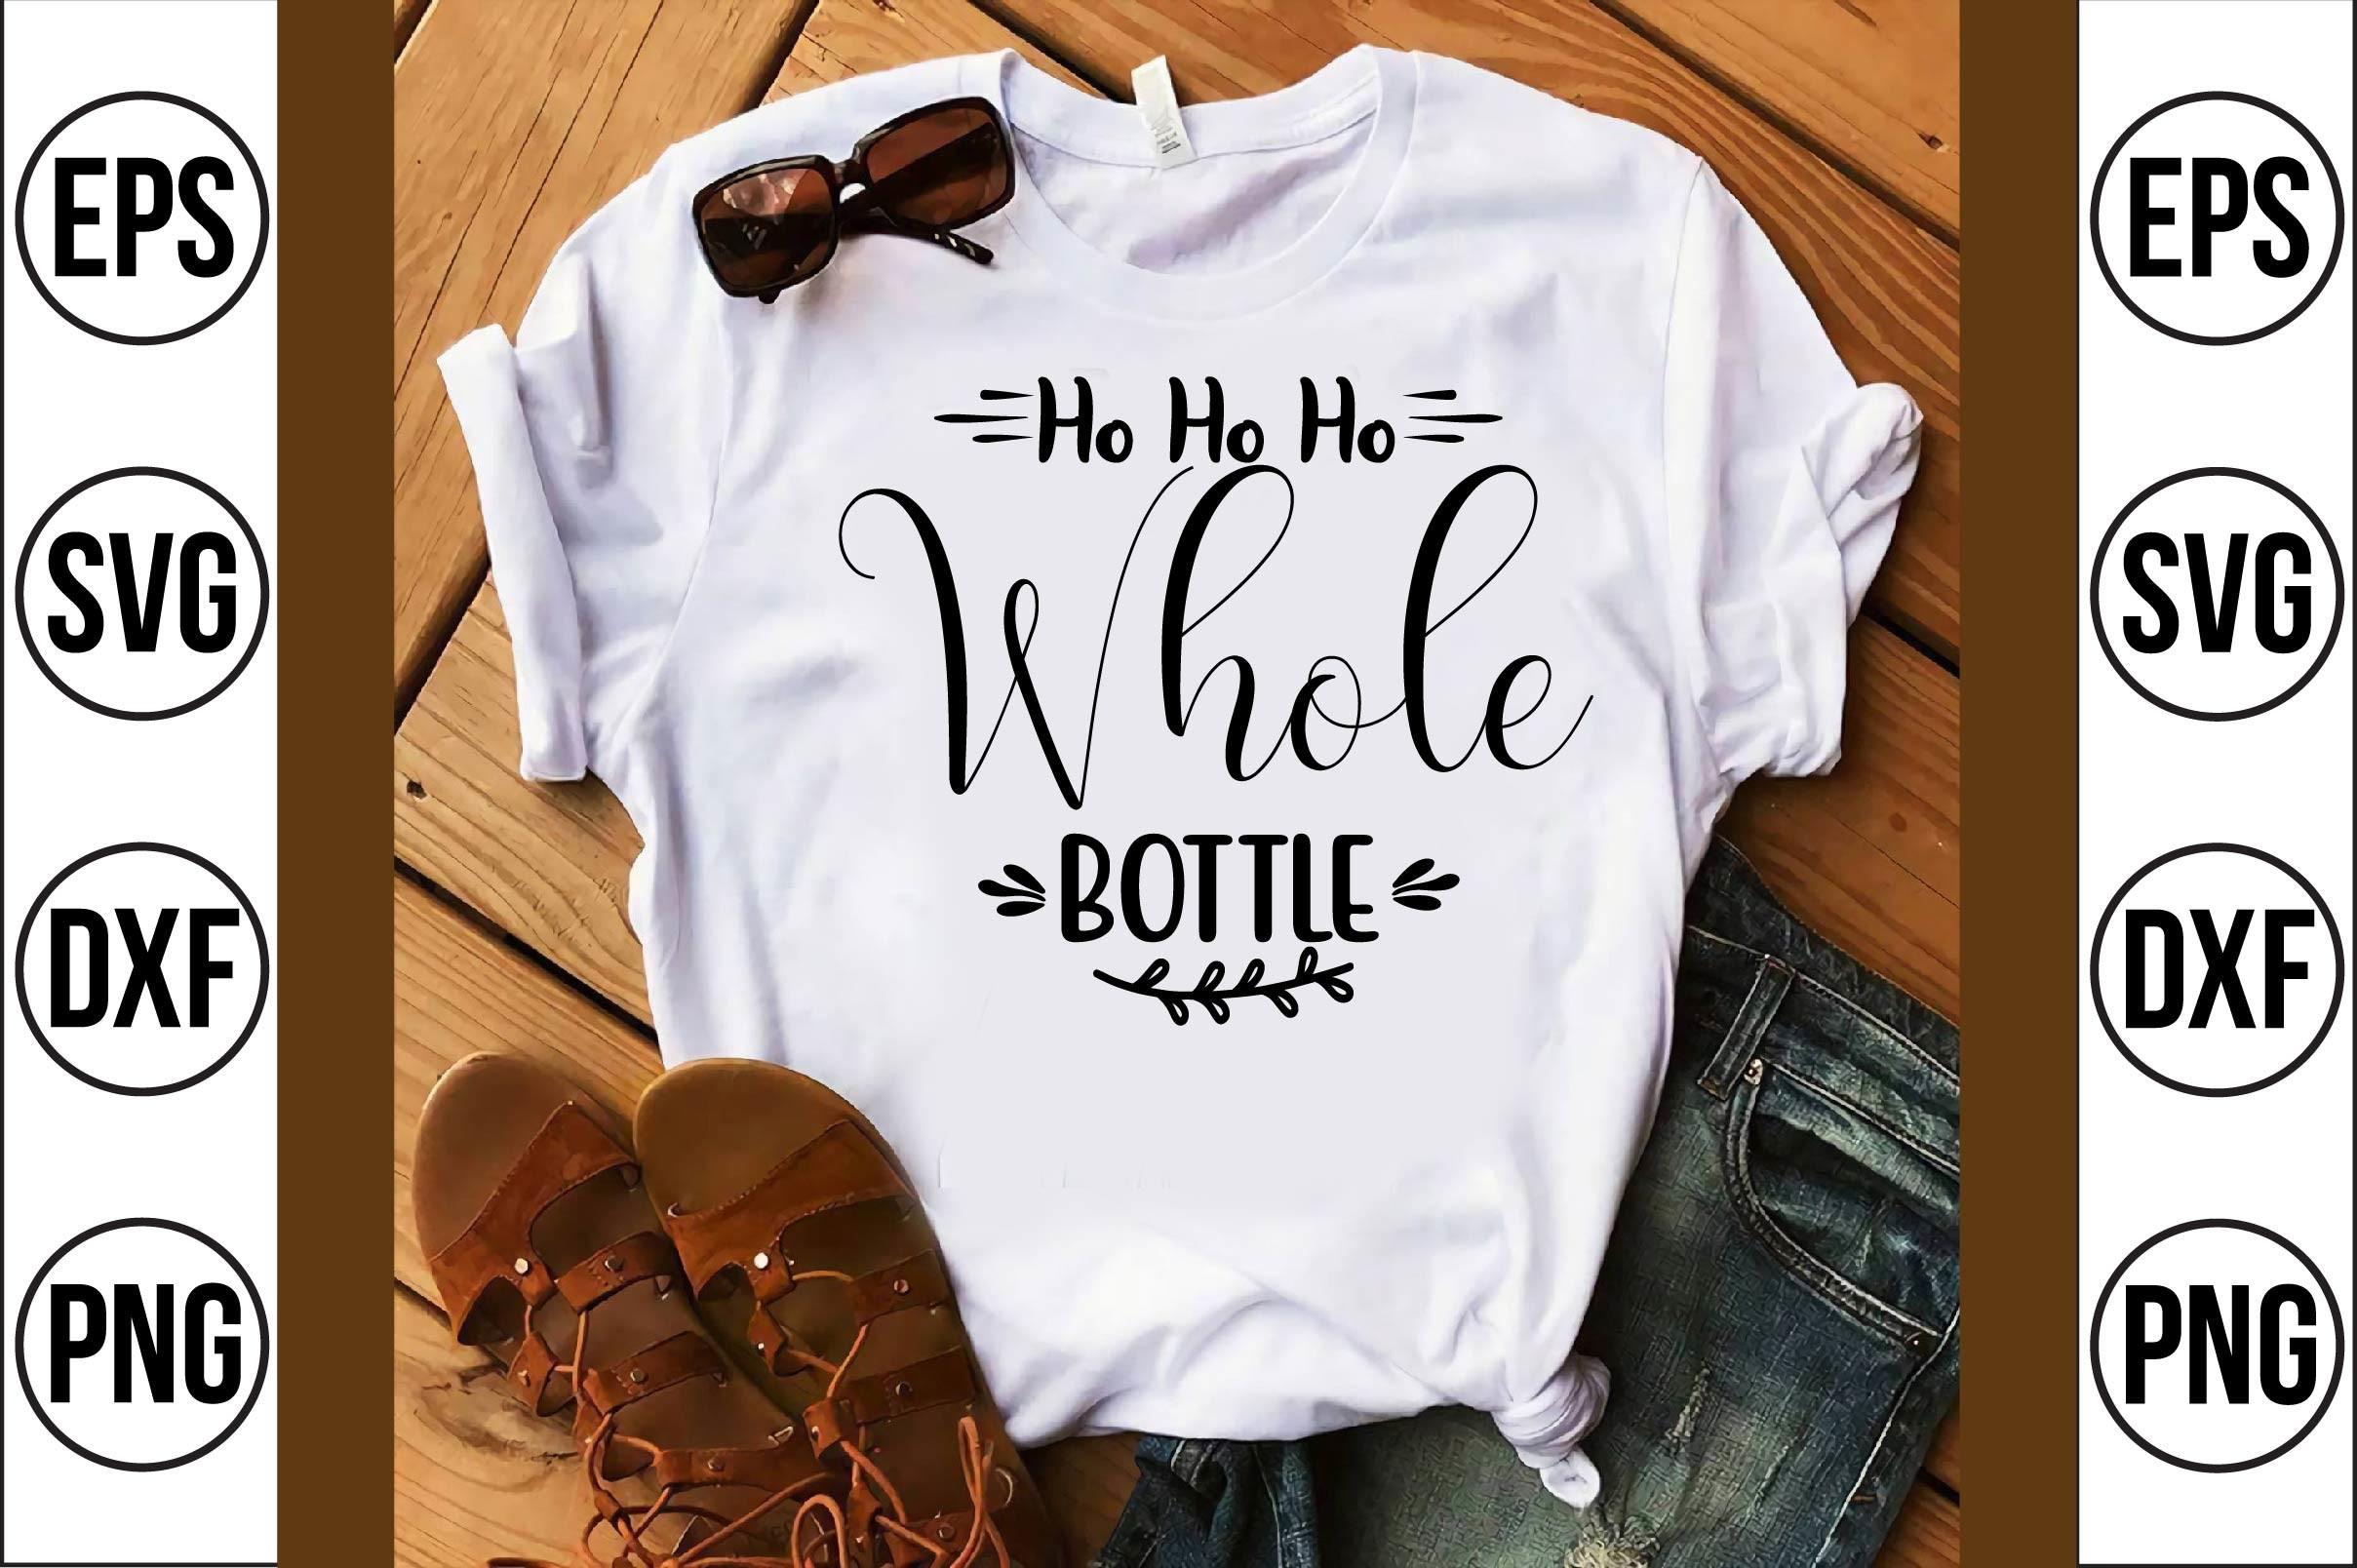 Ho Ho Ho Whole Bottle